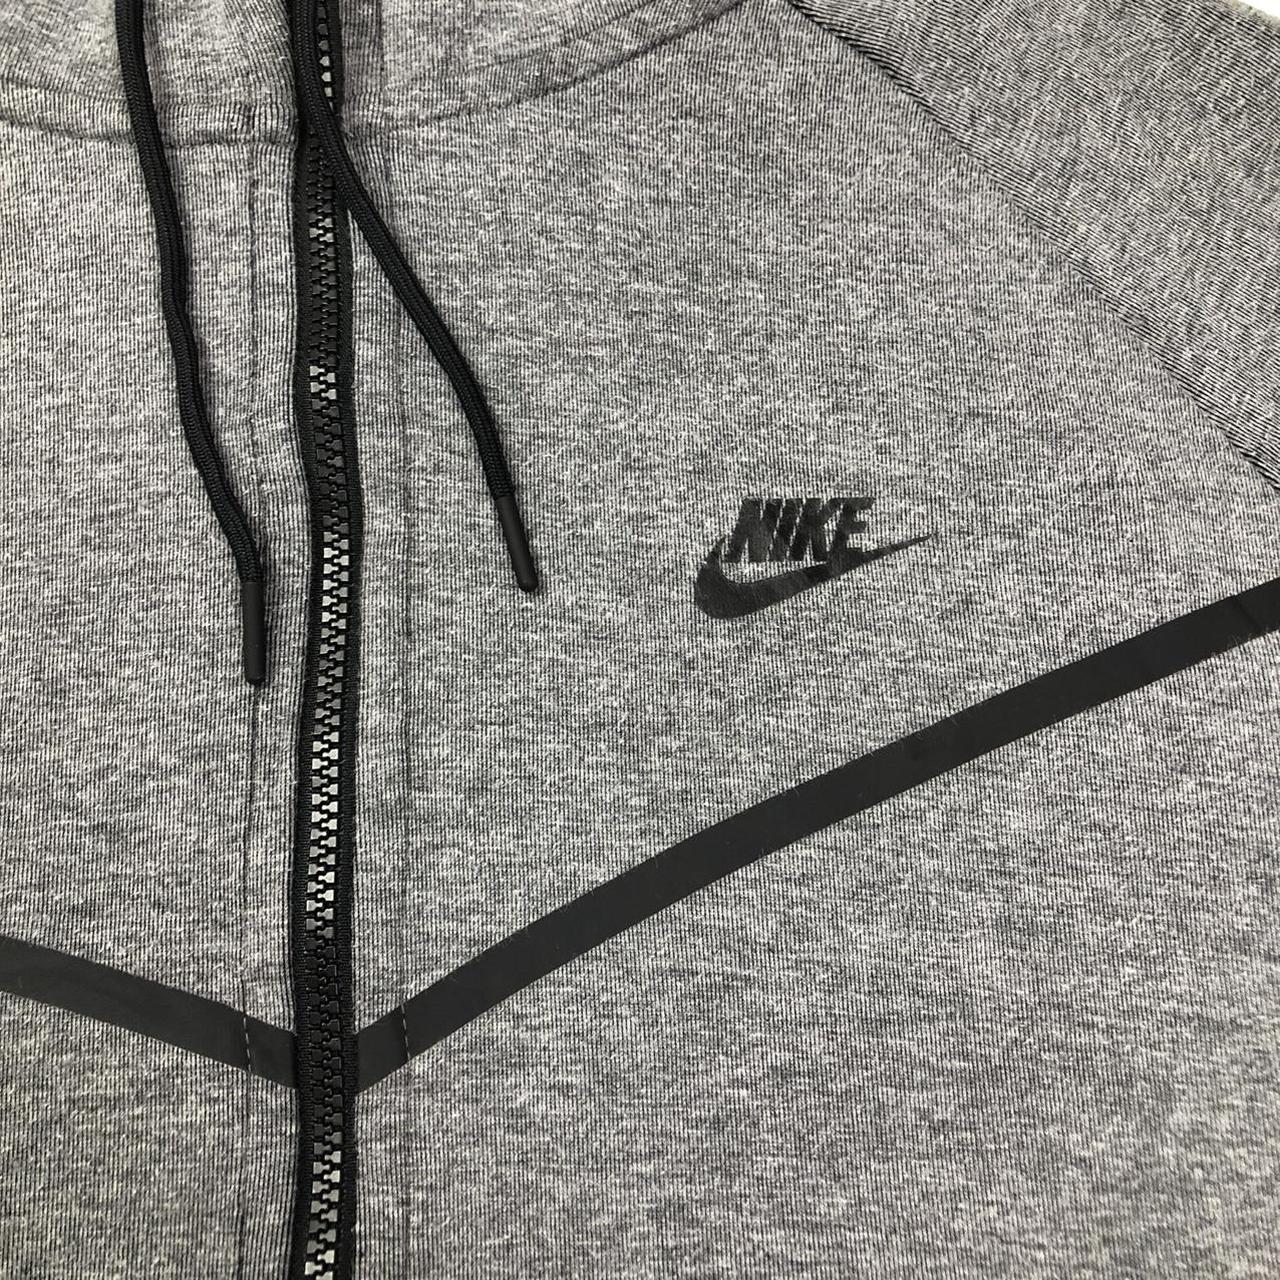 Detroit tigers Nike zip up hoodie, really well made, - Depop